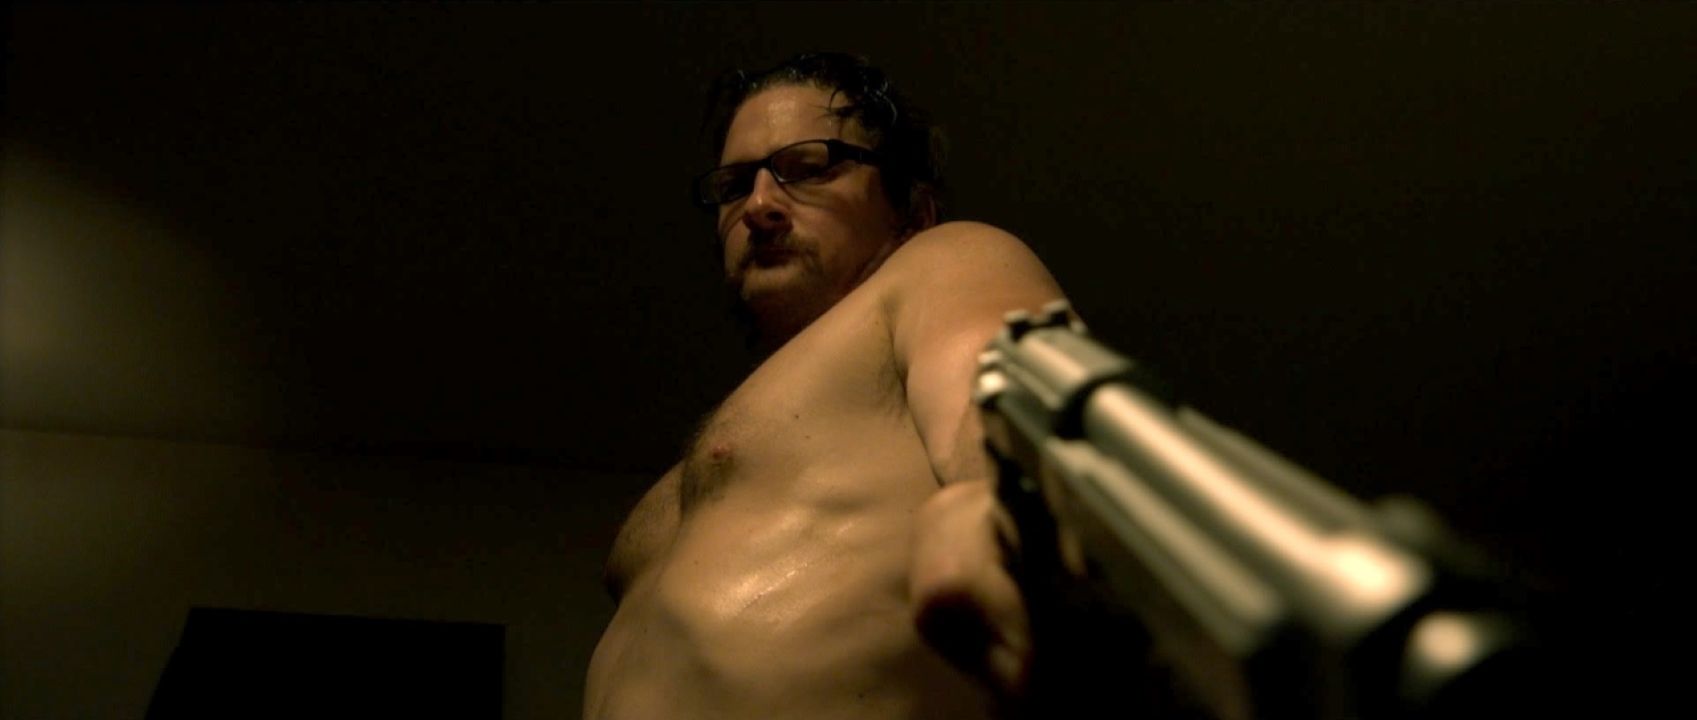 A shirtless Ray Belfi points a gun downward